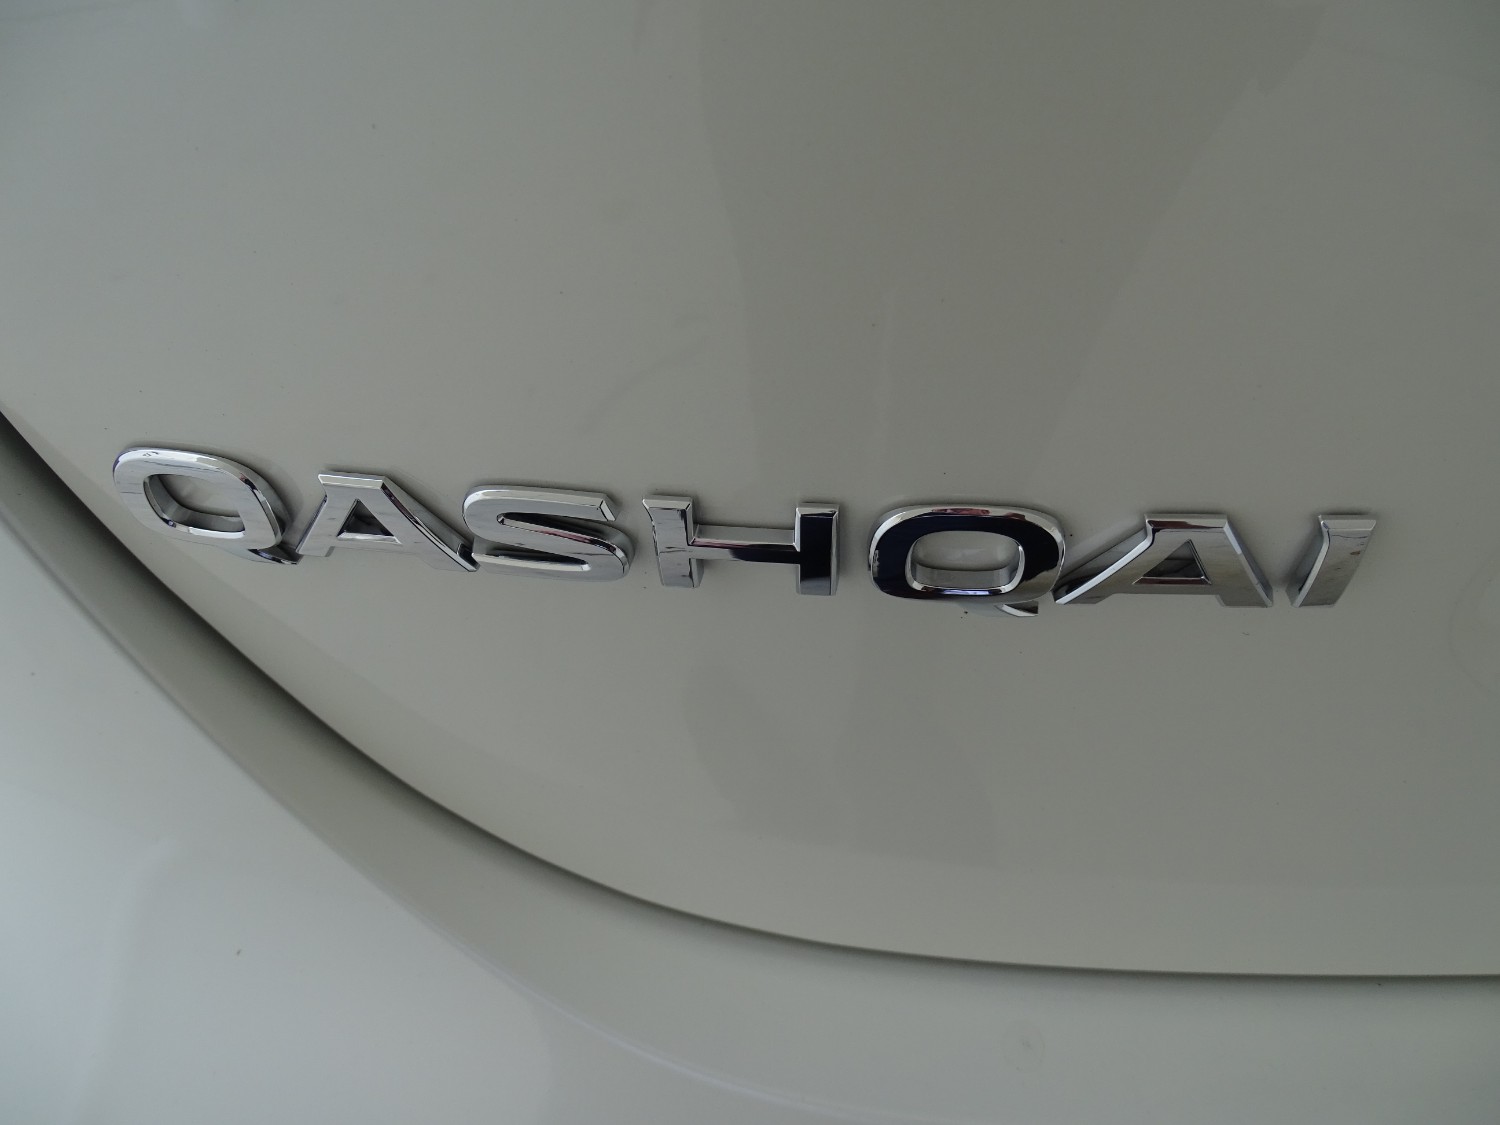 2018 MY19 Nissan QASHQAI SUV Image 26